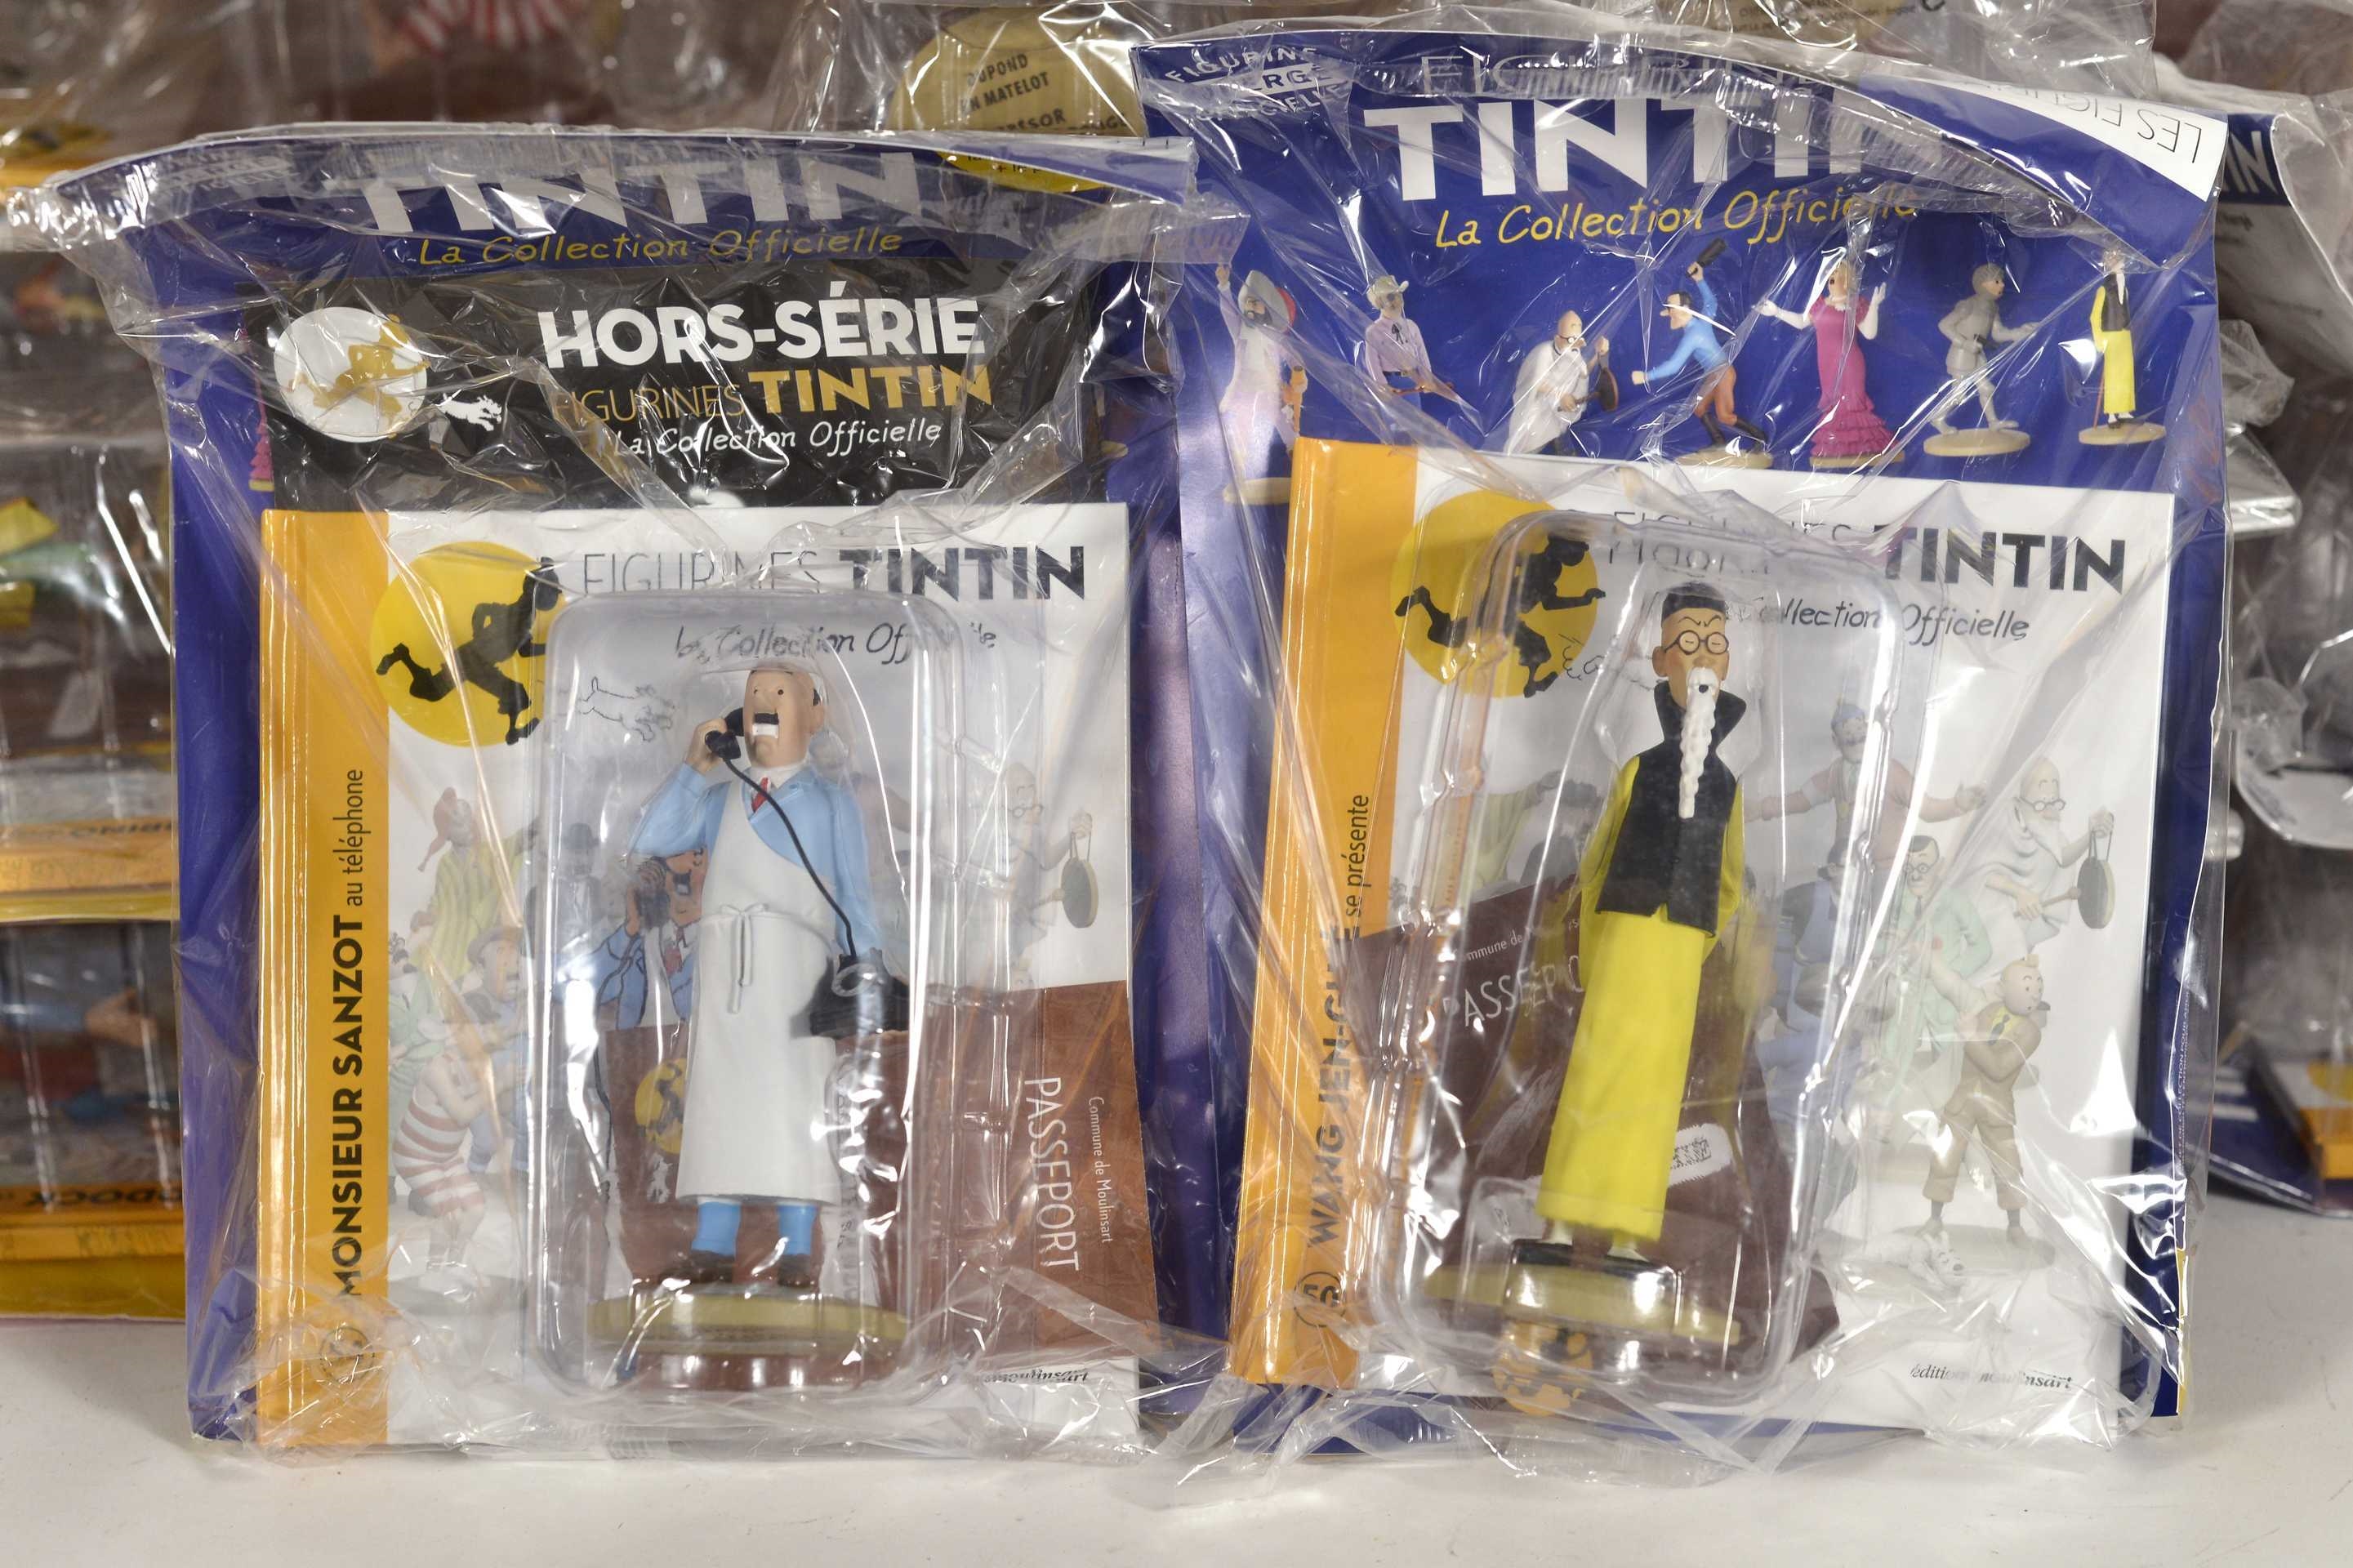 La première collection officielle de figurines Tintin - Festival